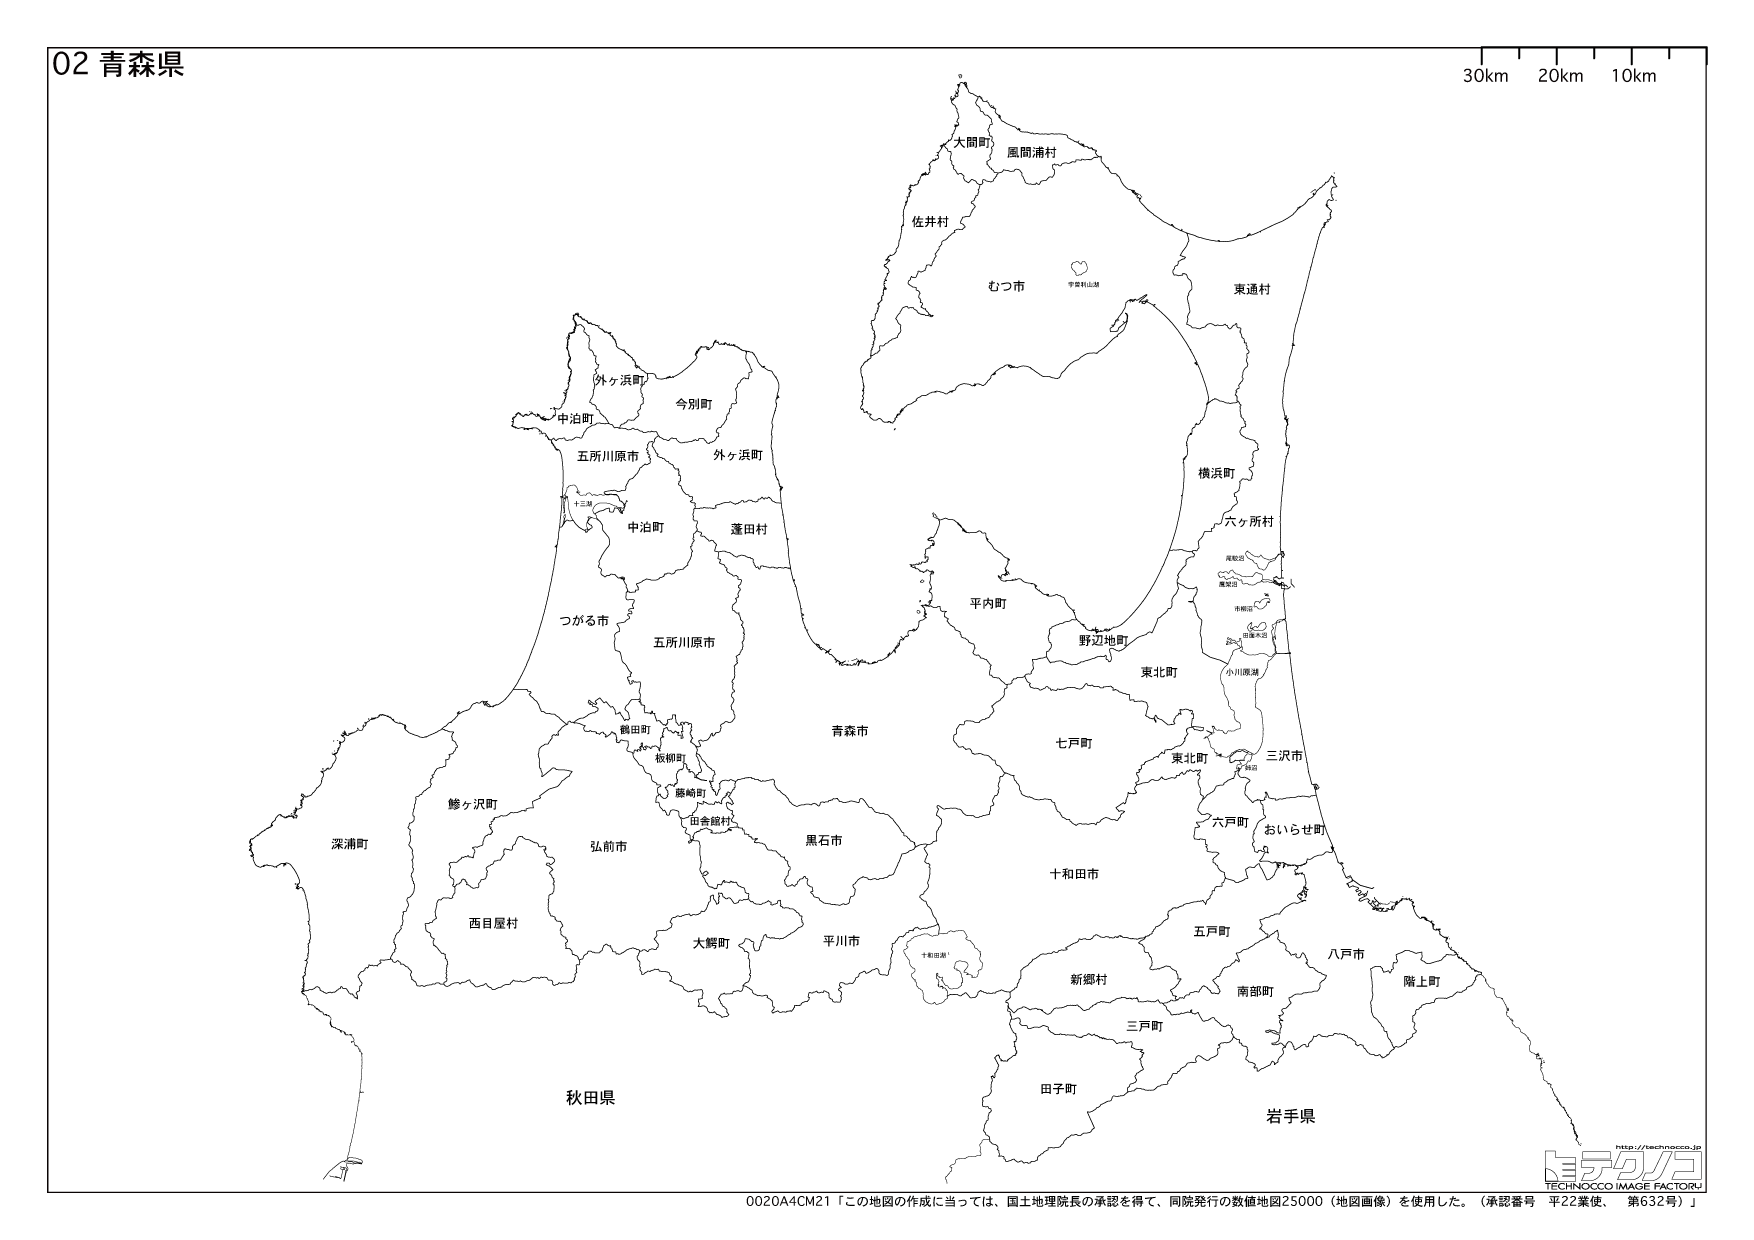 青森県の白地図と市町村の合併情報 都道府県コード2